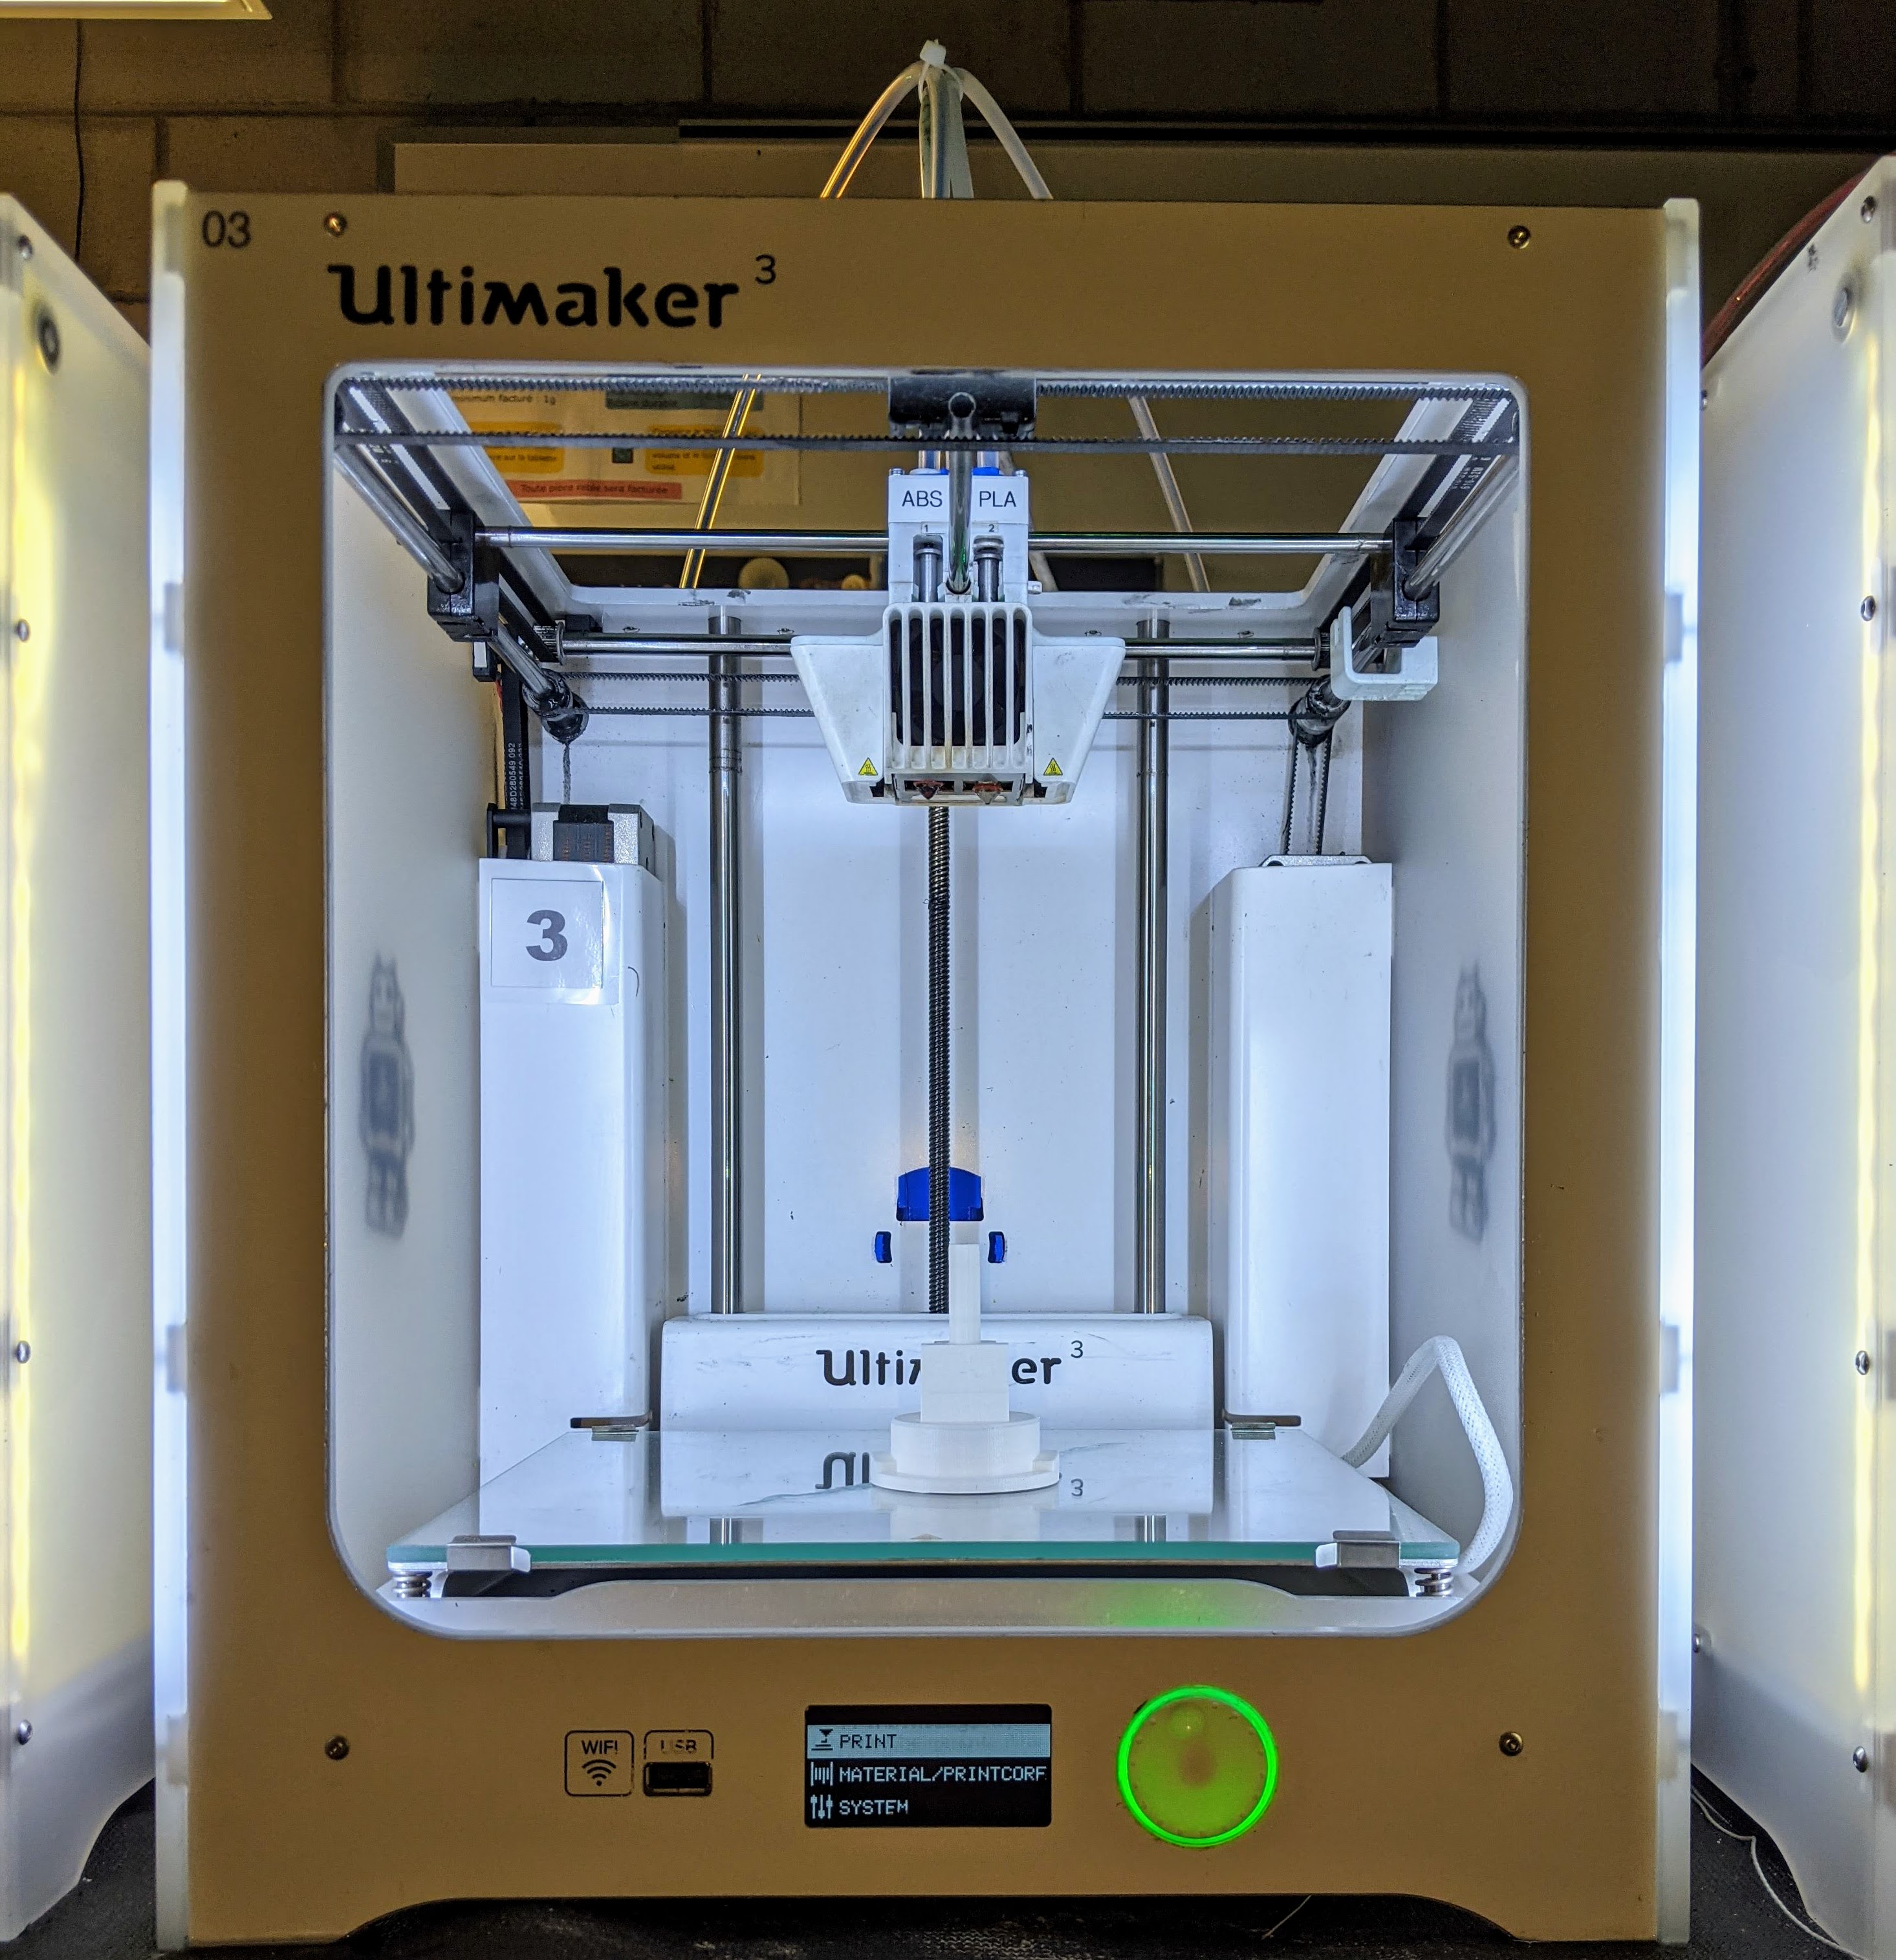 Filament imprimante 3D : quel matériau choisir ? - 3Dnatives